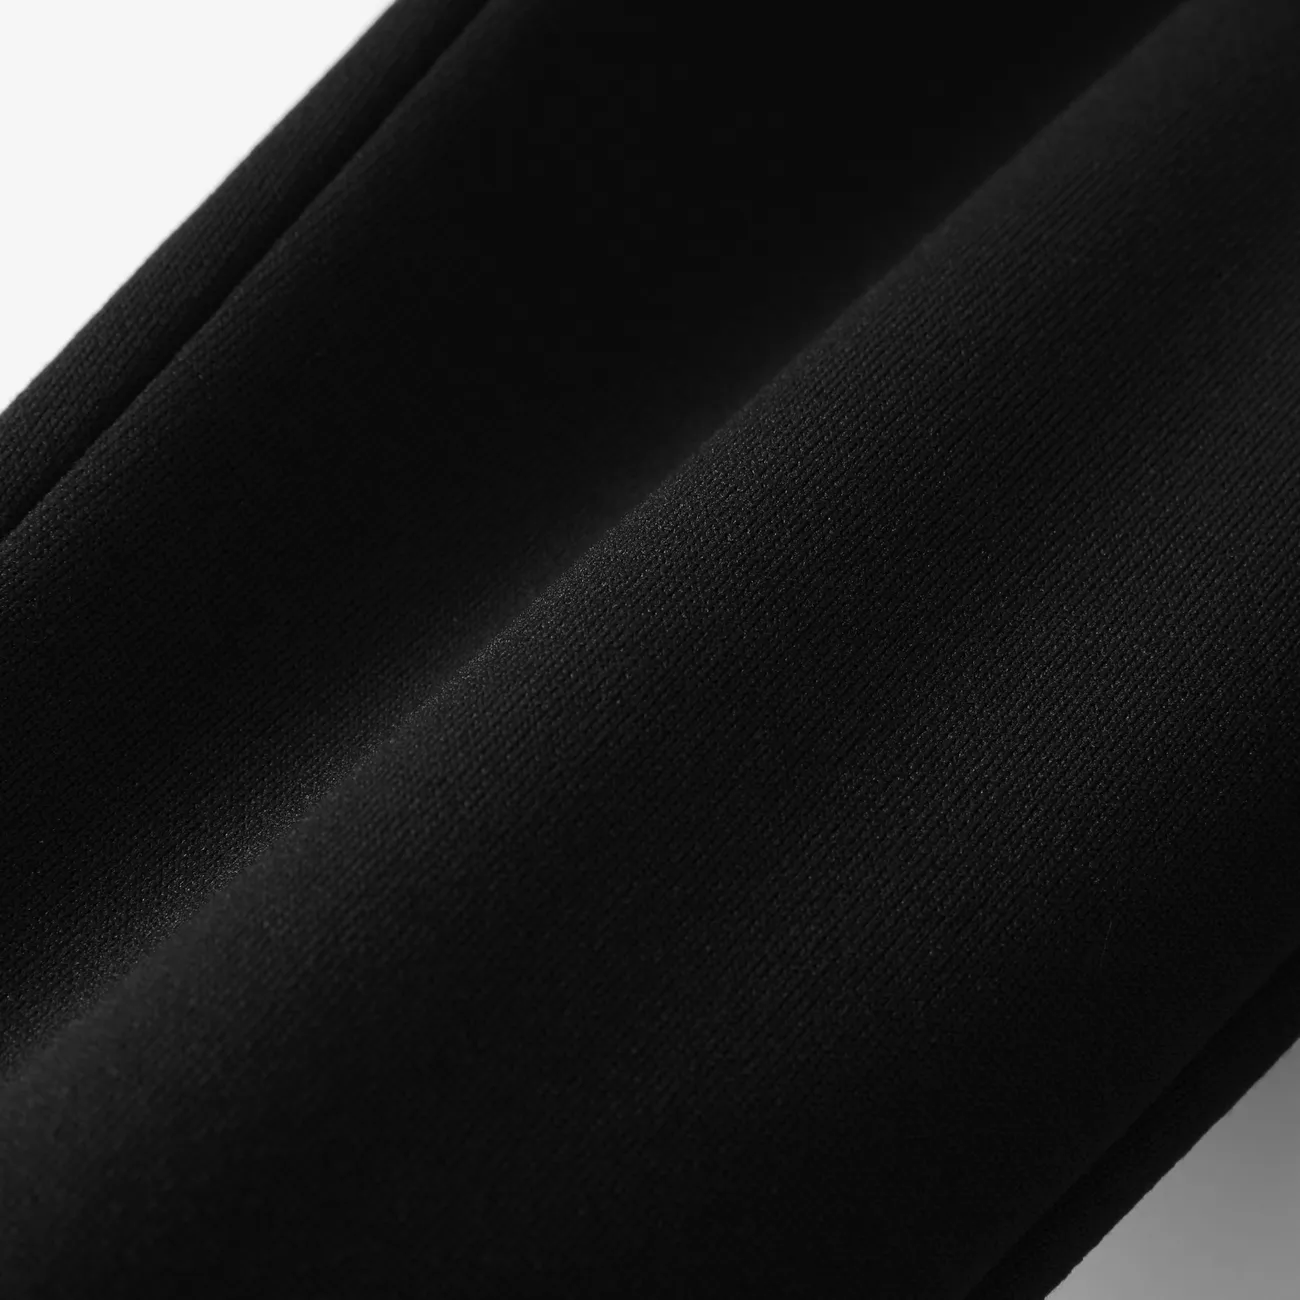 Lockere Freizeithose für Jungen mit aufgesetzten Taschen - 1 Stück, Polyester-Spandex-Mischung, einfarbig schwarz big image 1